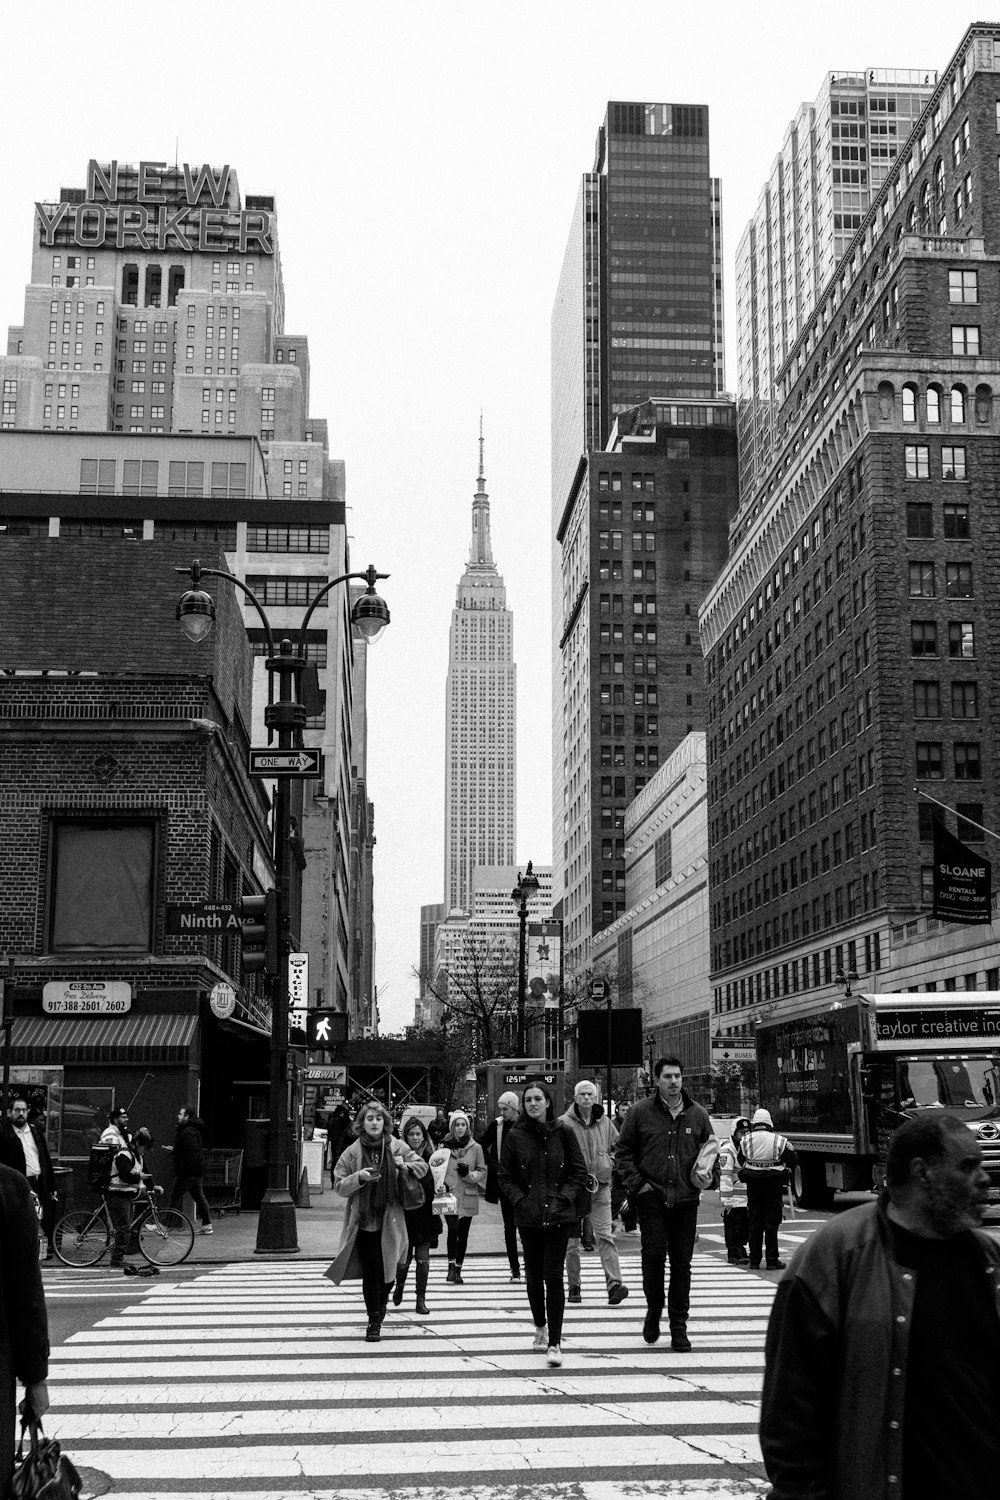 Foto en escala de grises de personas caminando por la calle cerca de edificios de gran altura